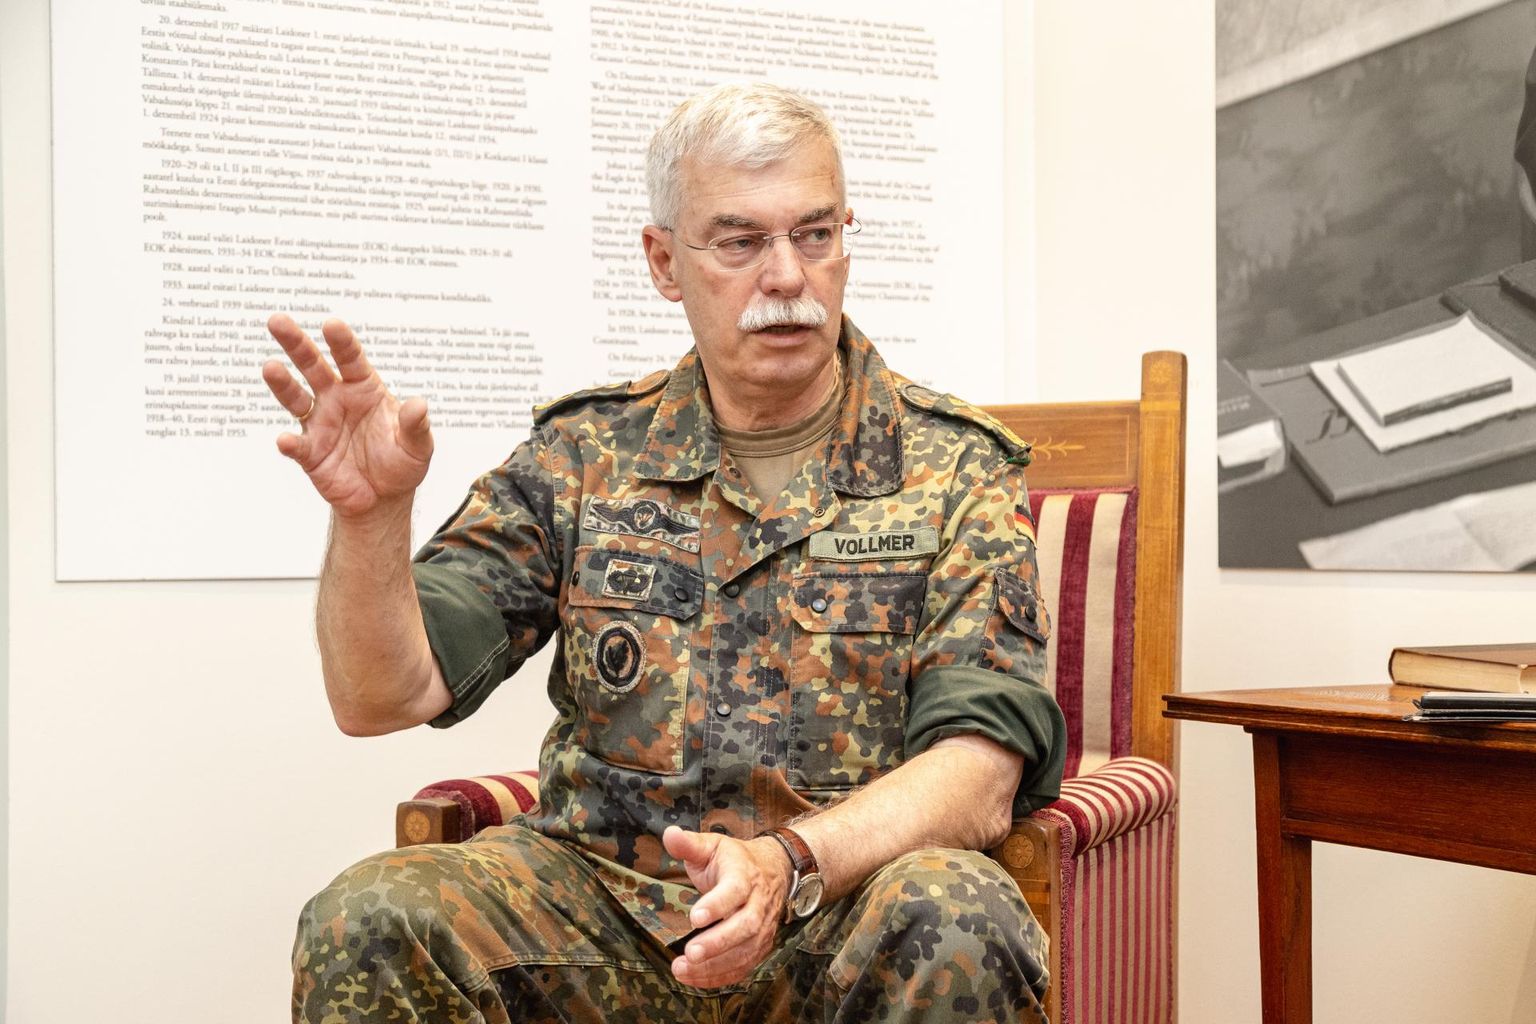 Kaitsejõud pakkusid koroonakriisi ajal tsiviilelanikkonnale abi, mis oli vajalik ja väga hea, ütleb Brunssumi väejuhatuse ülem kindral Jörg Vollmer.